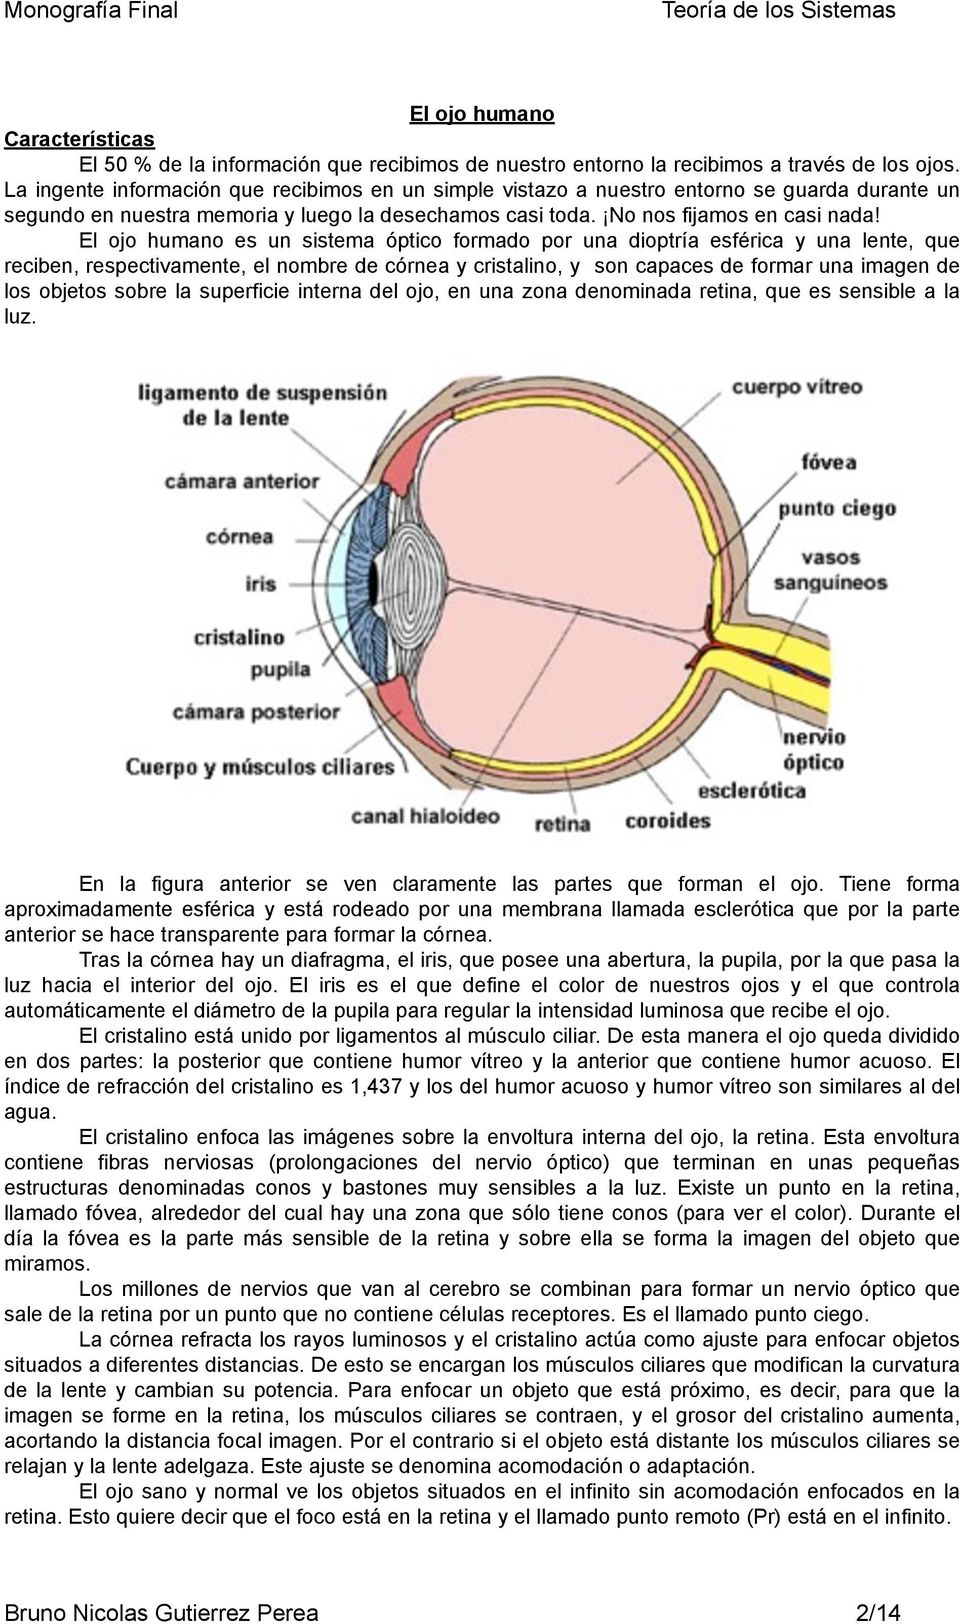 El ojo humano es un sistema óptico formado por una dioptría esférica y una lente, que reciben, respectivamente, el nombre de córnea y cristalino, y son capaces de formar una imagen de los objetos